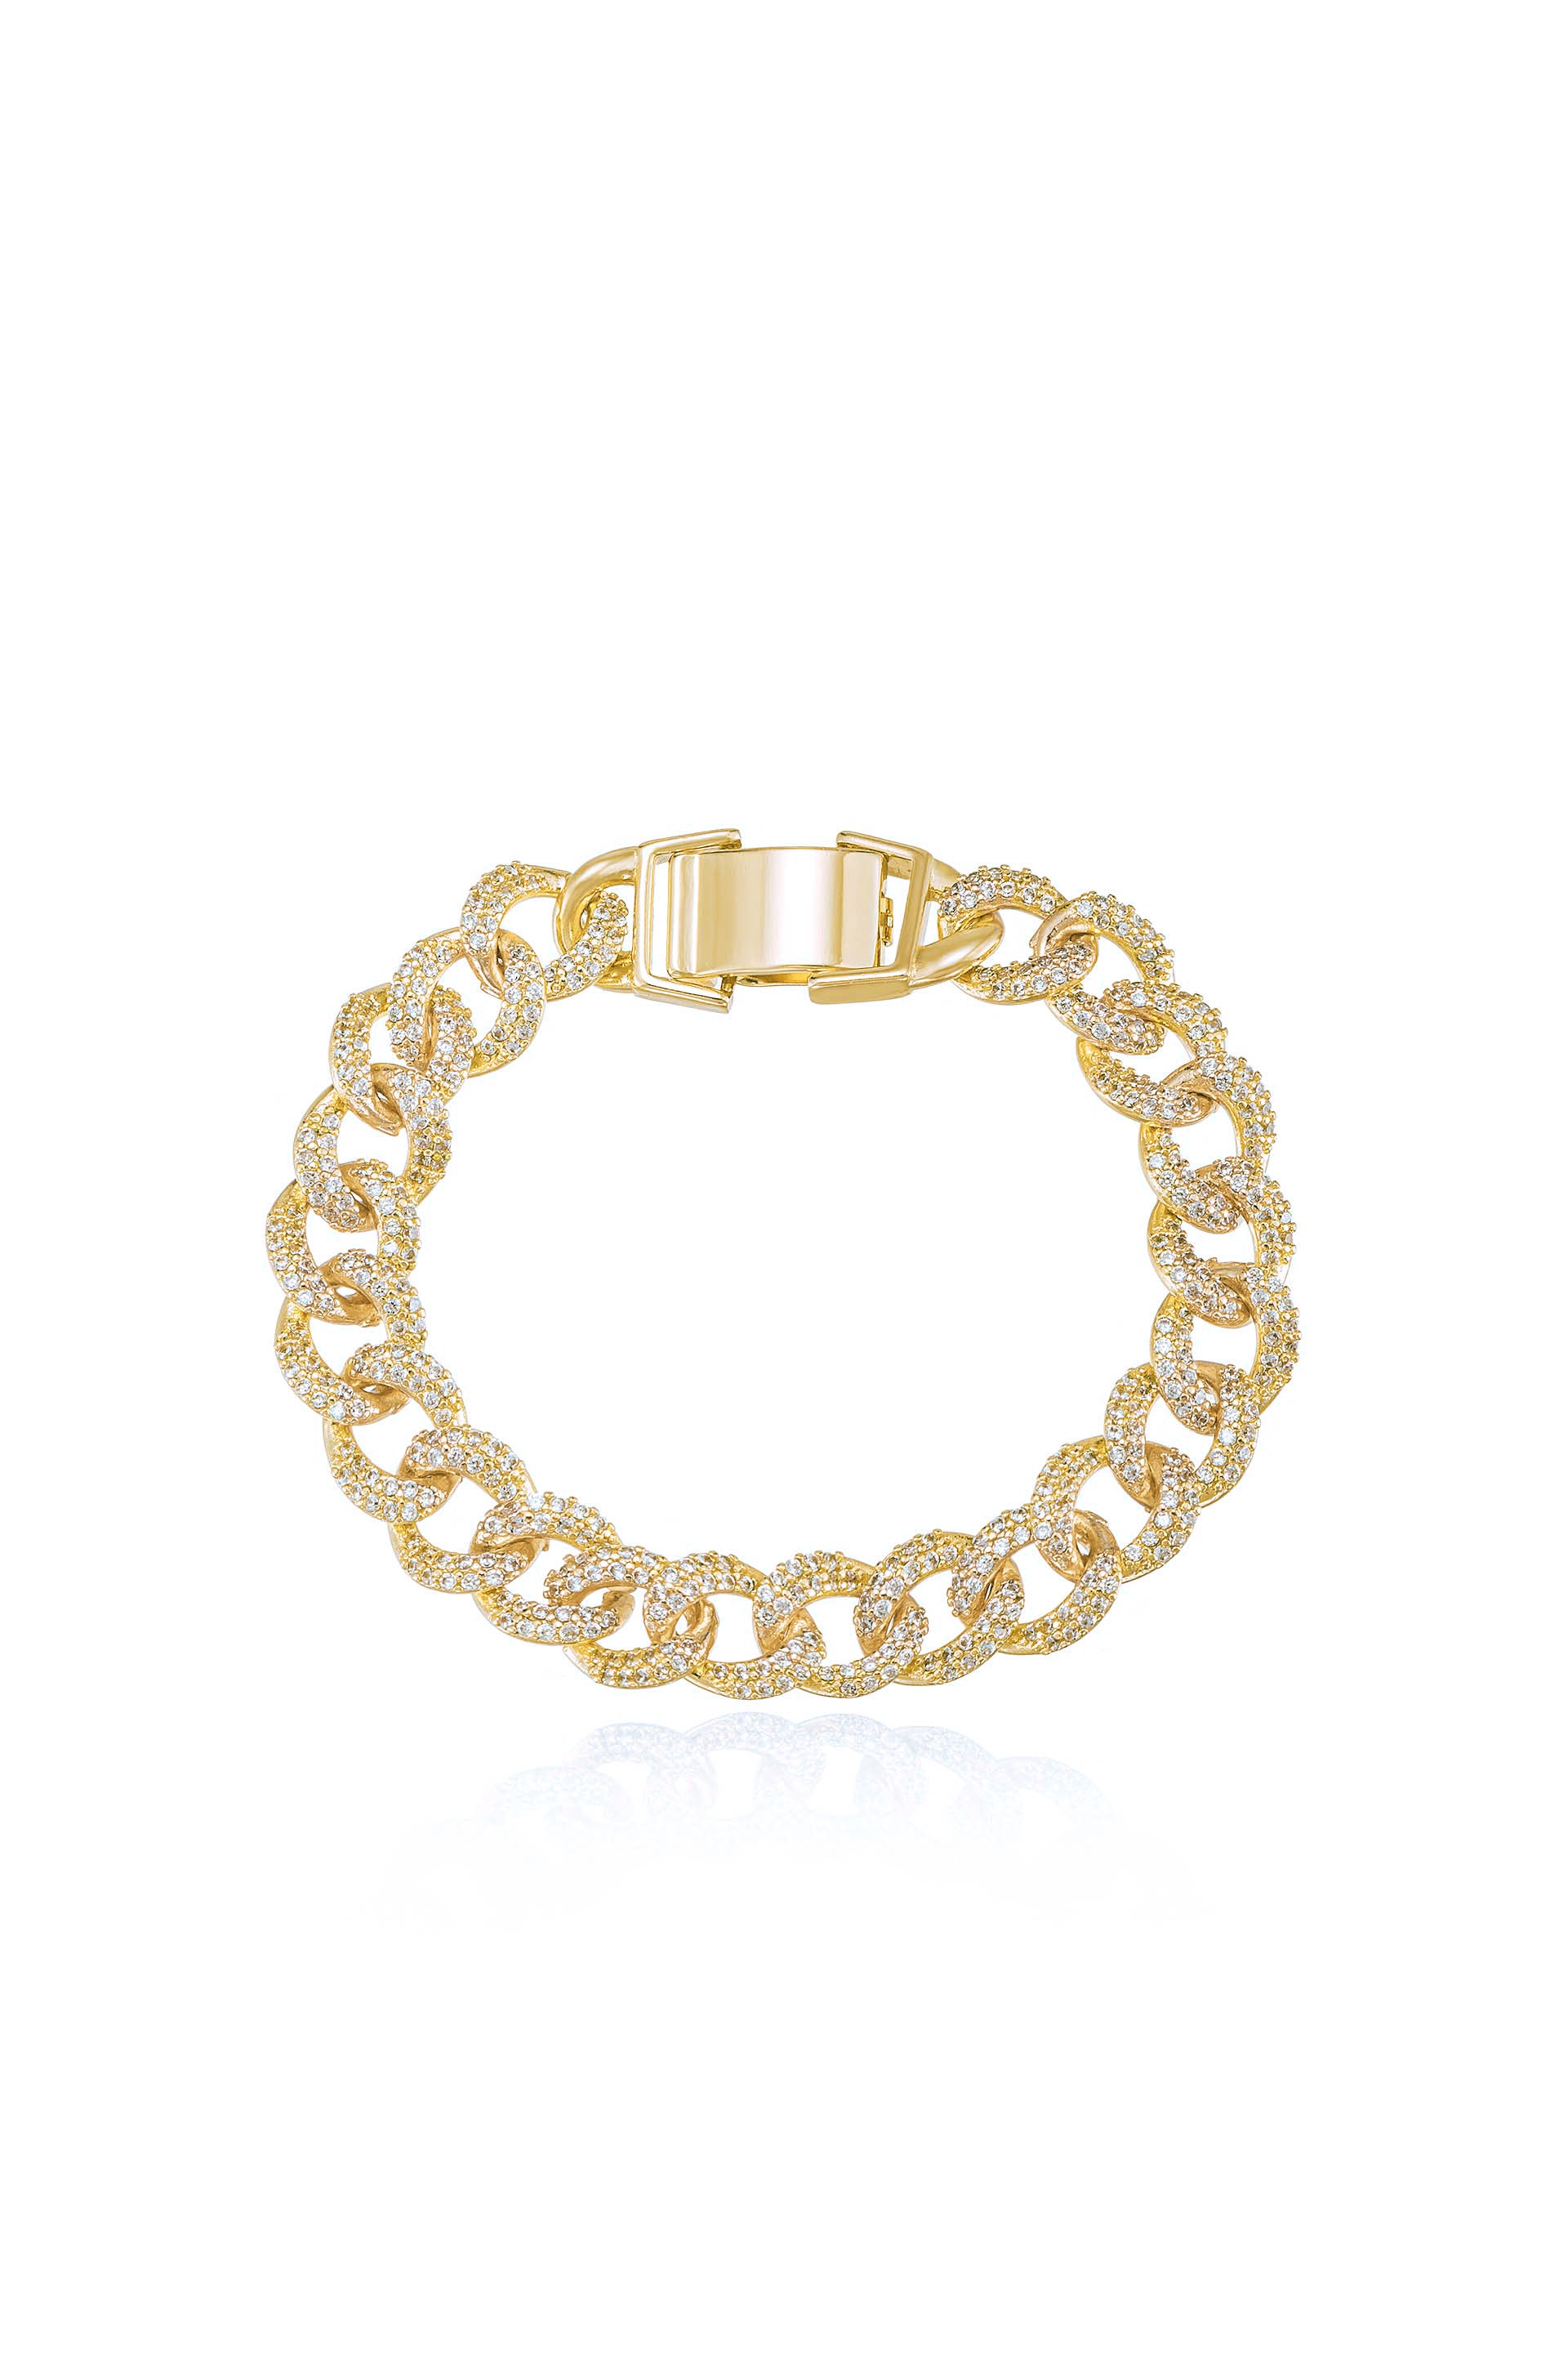 Embellished Pave Chain 18k Gold Plated Bracelet